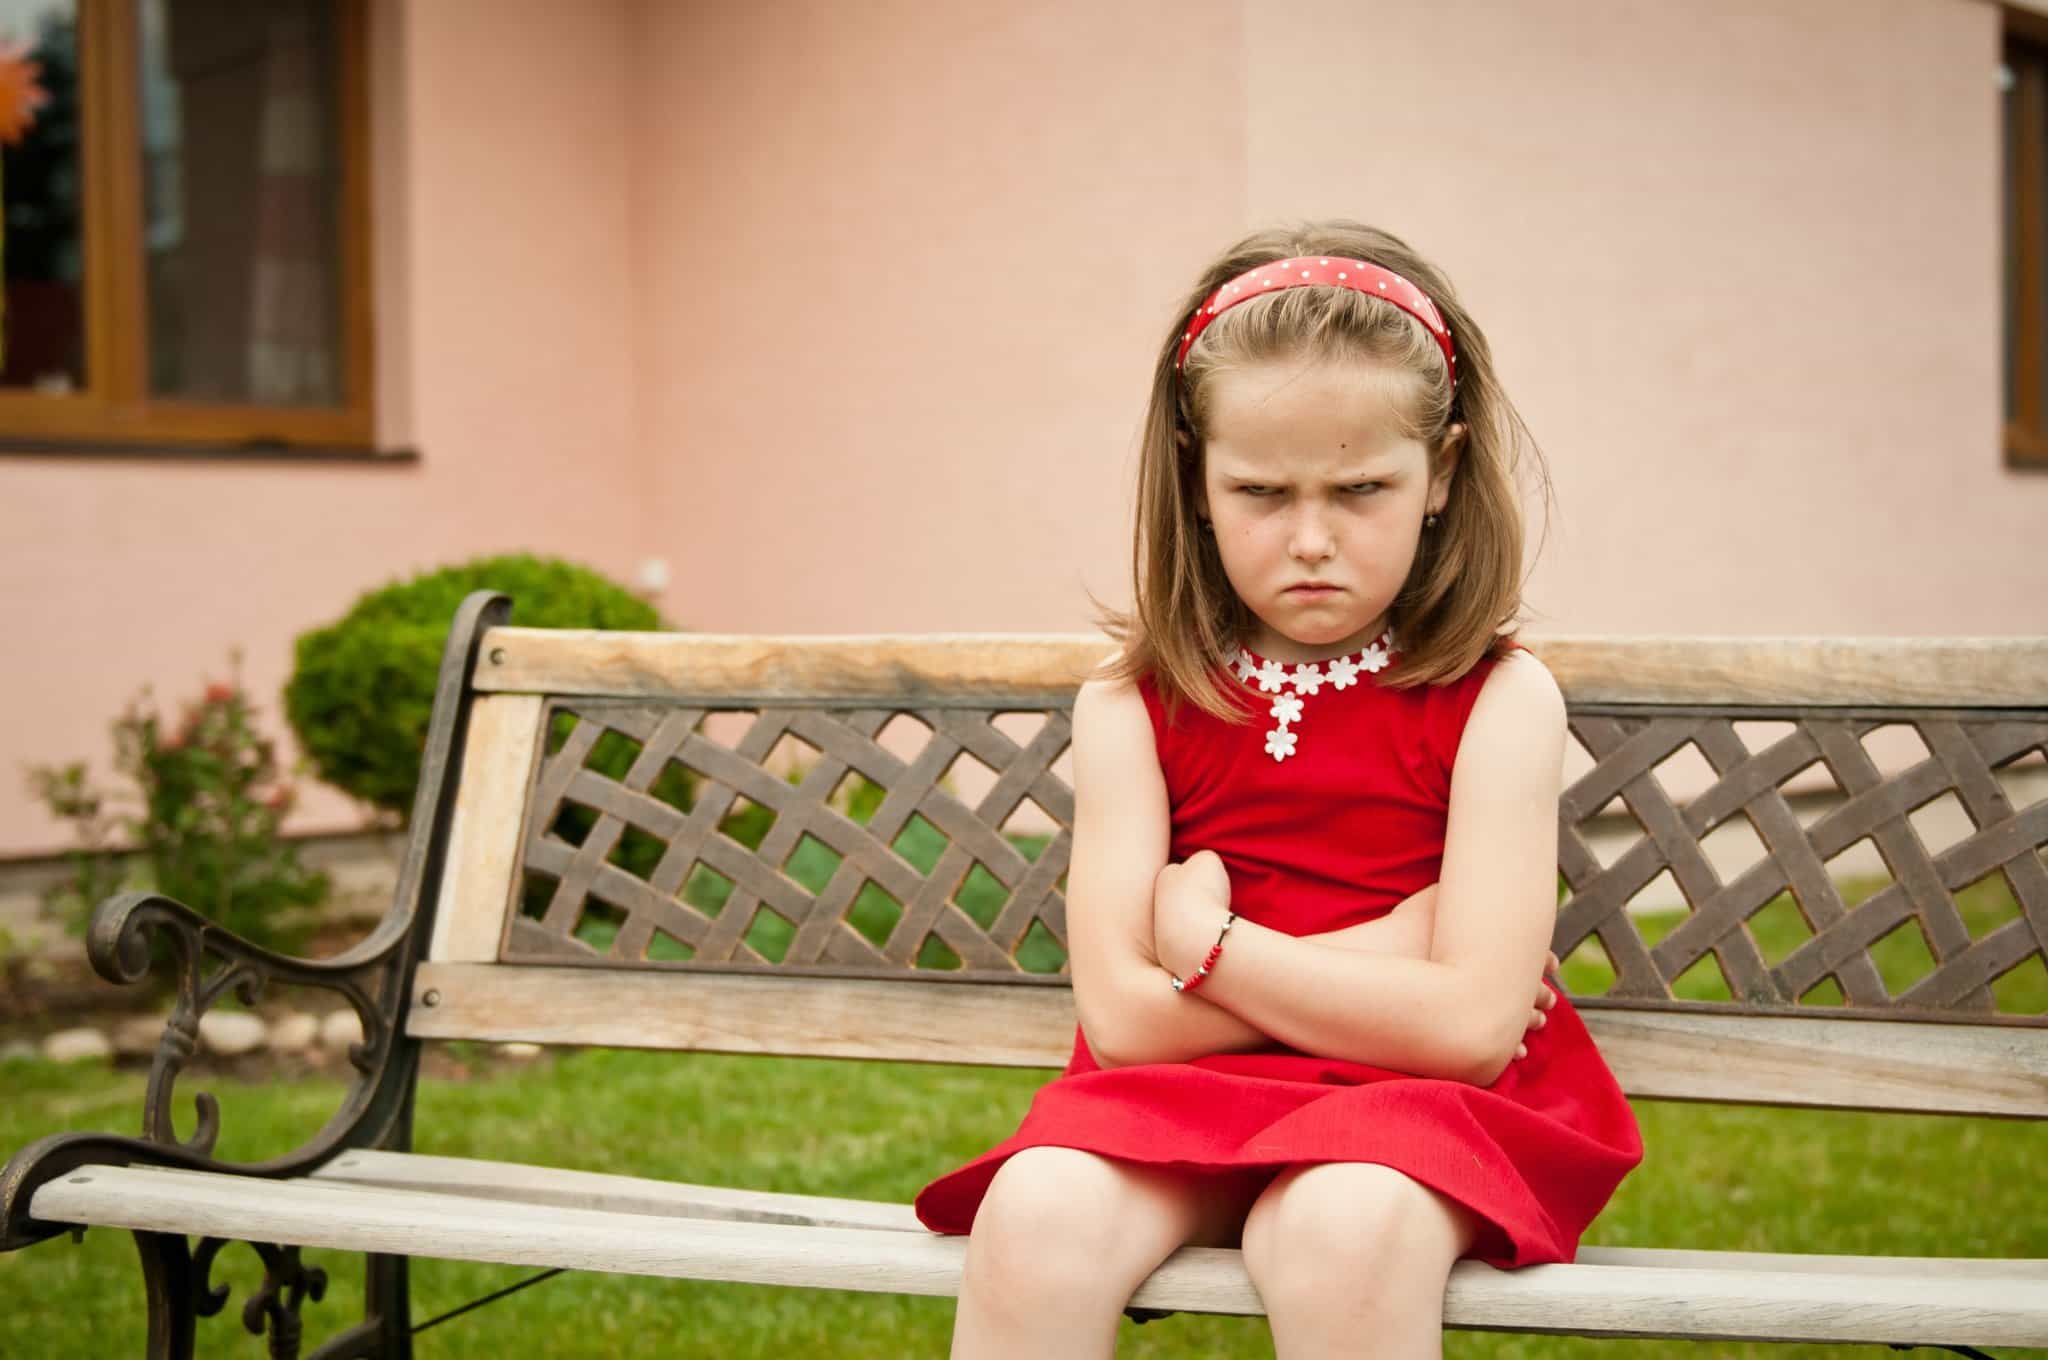 Mengenal Gangguan Perilaku pada Anak serta Ciri dan Penanganannya